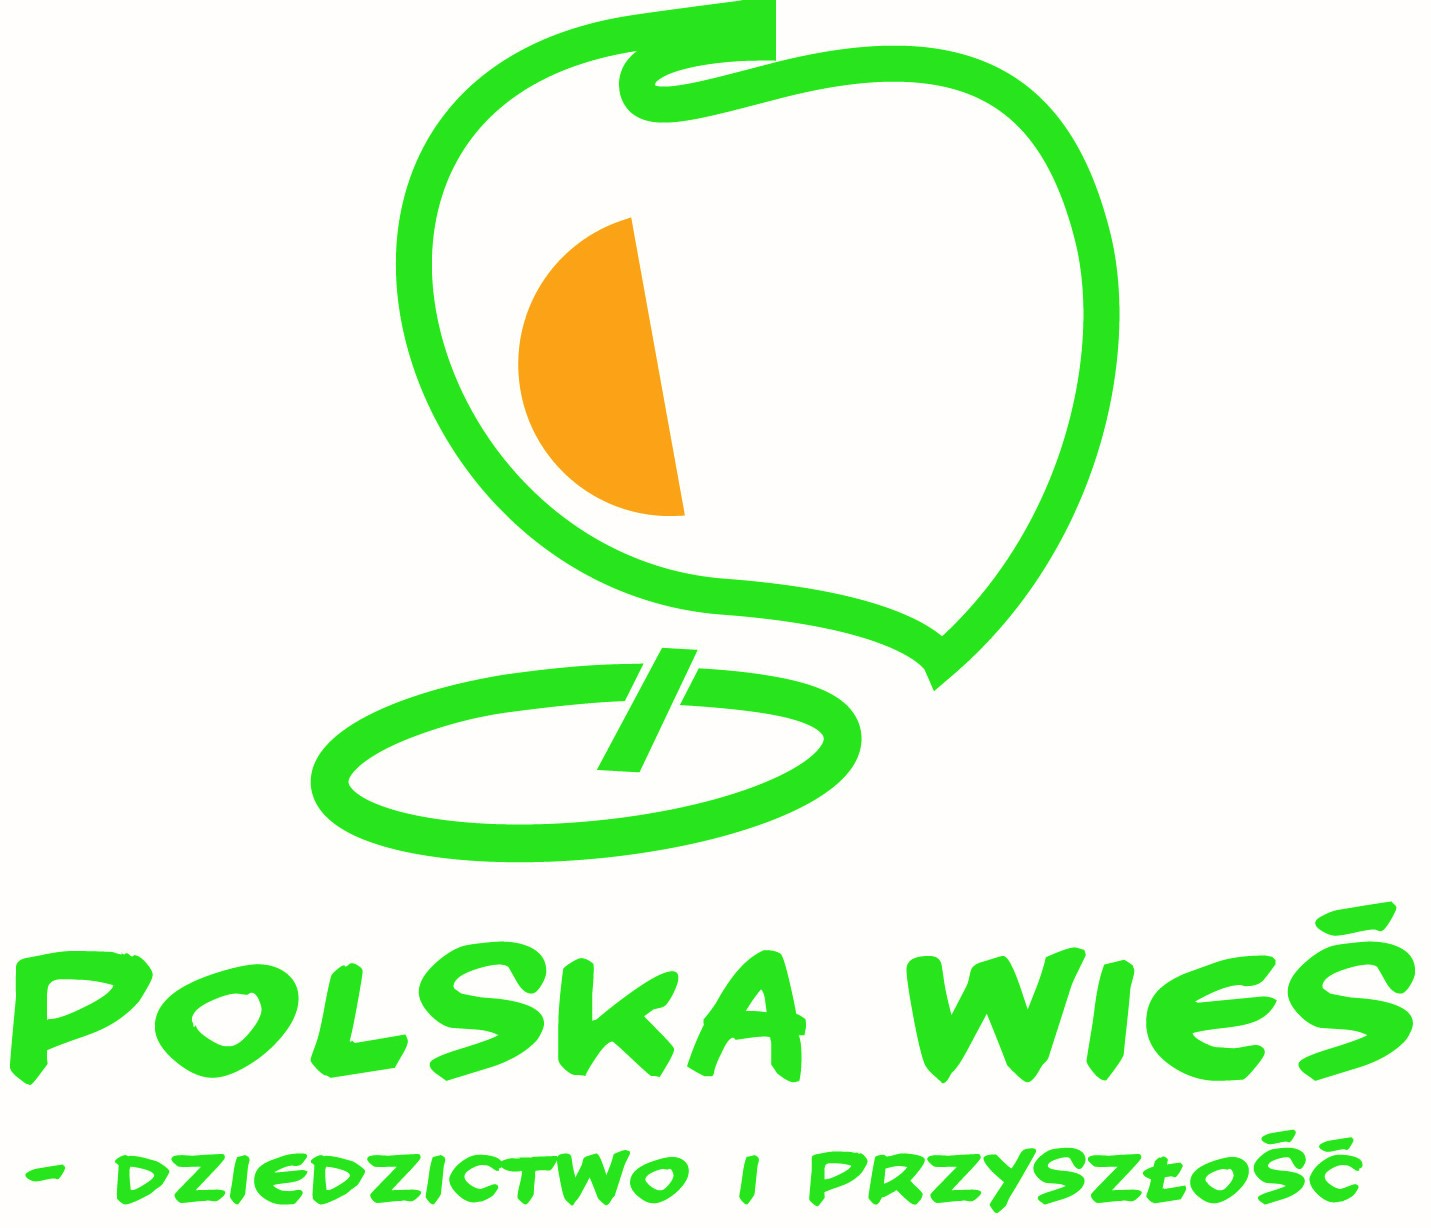 Białe logo z zielonymi napisami 